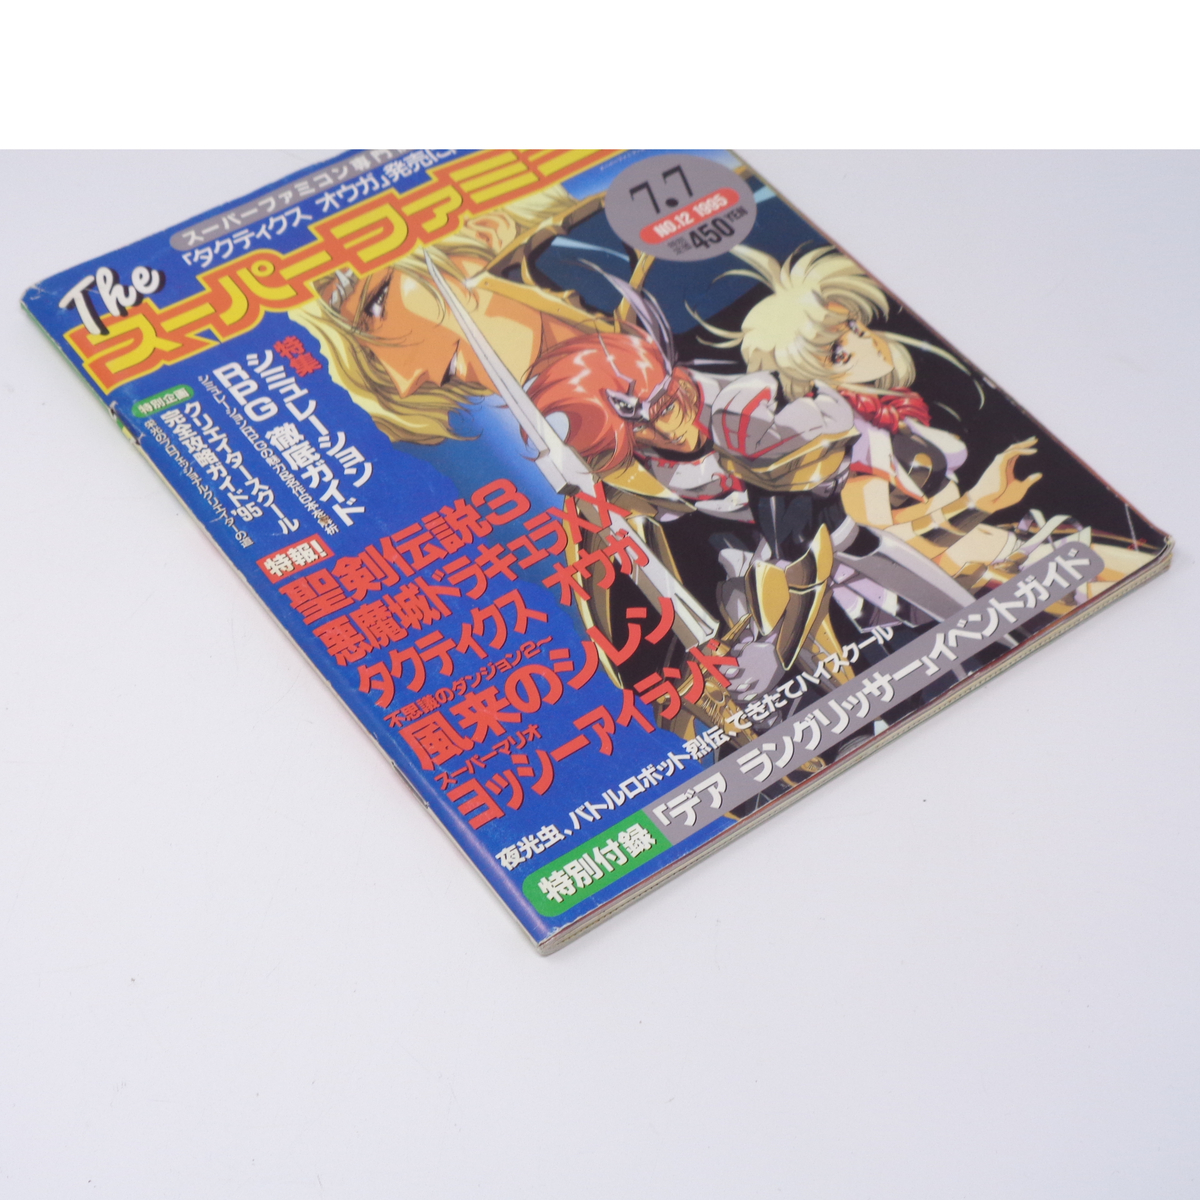 The SuperFamicom 1995年7月7日号 NO.12 別冊付録無し/風来のシレン/悪魔城ドラキュラXX/Theスーパーファミコン/ゲーム雑誌[Free Shipping]_画像3